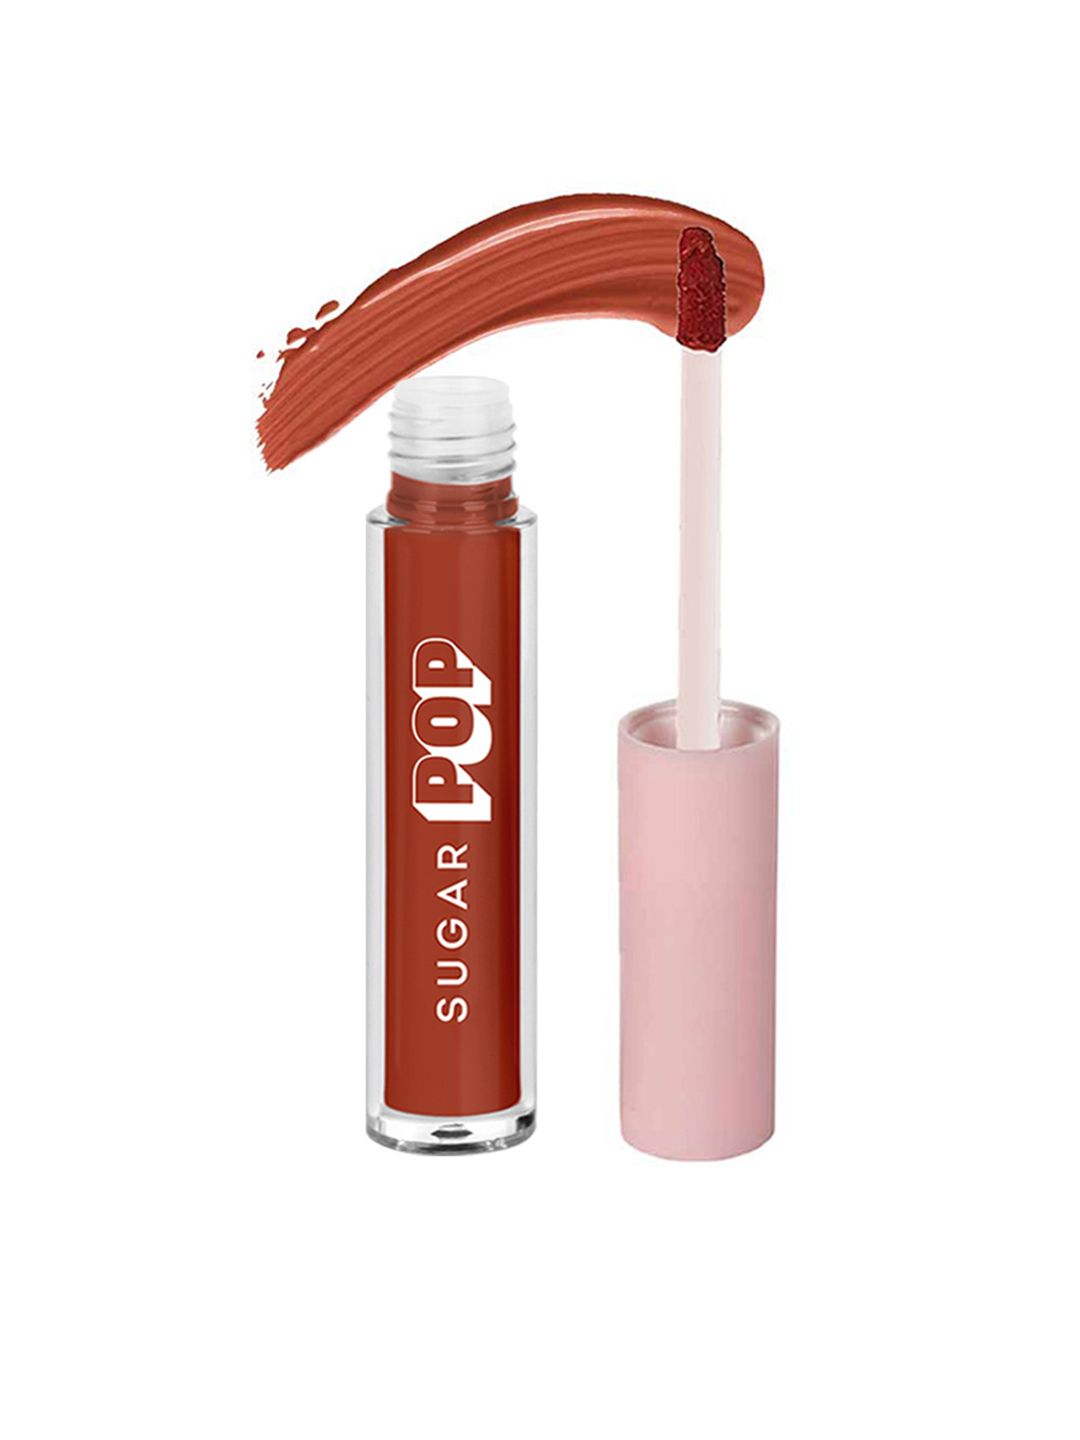 SUGAR POP Non-Drying Transfer Proof Matte Finish Liquid Lipstick 2.5 ml - Peach 05 Price in India